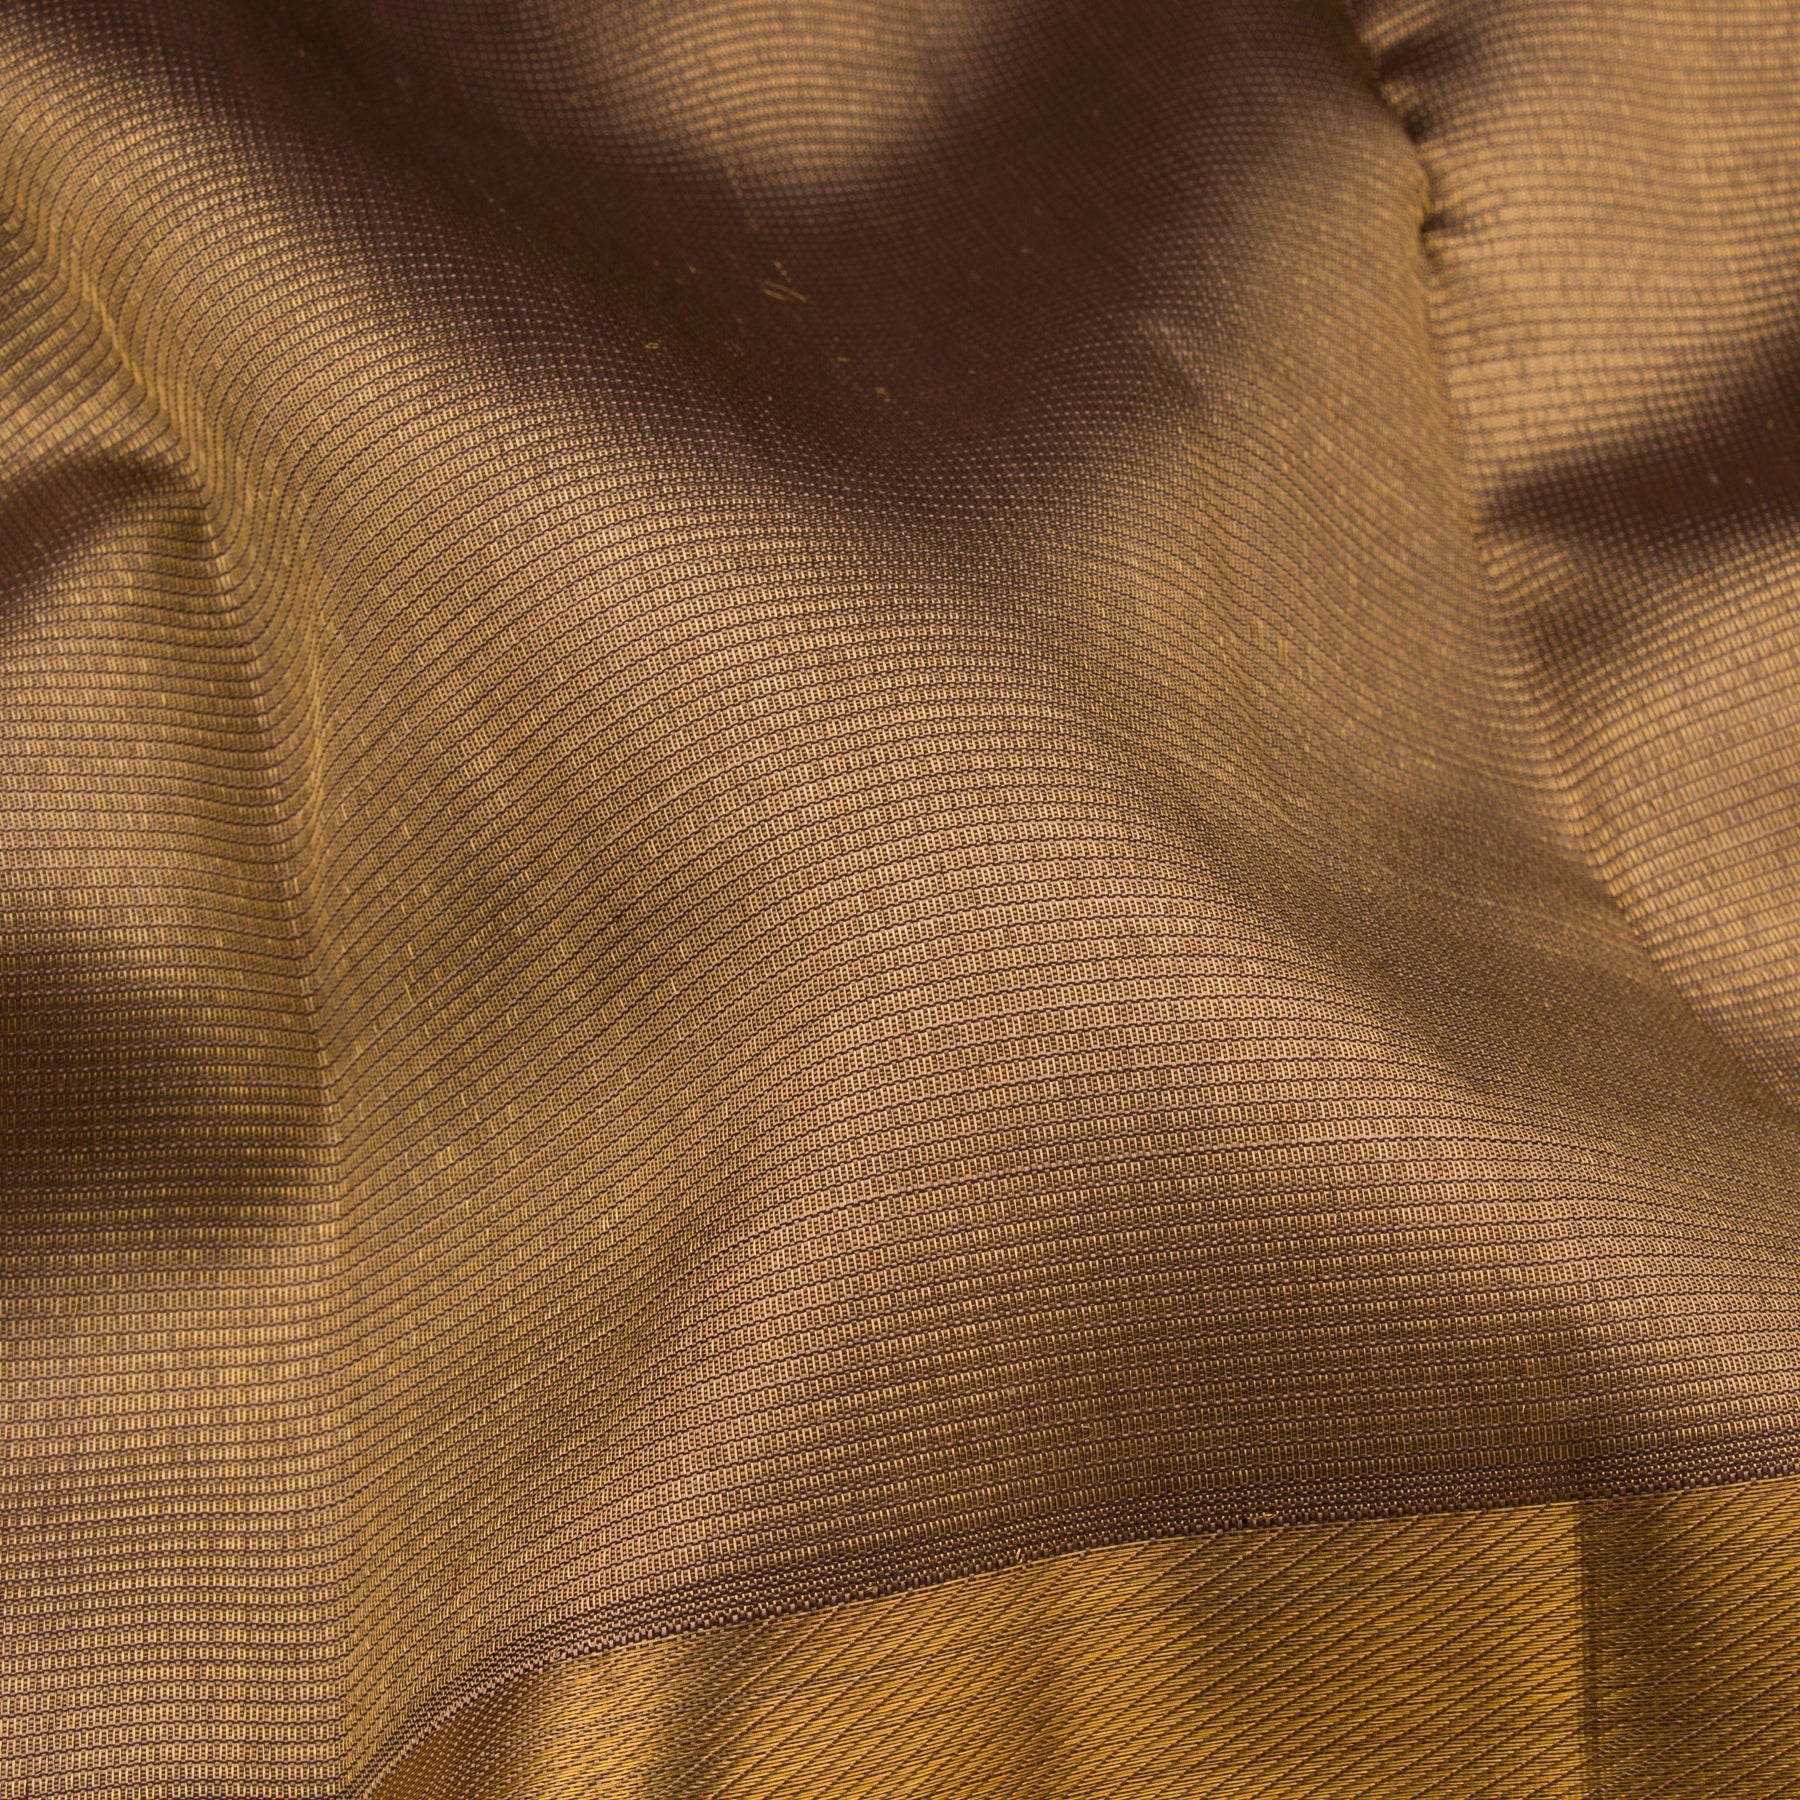 Kanakavalli Kanjivaram Silk Sari 22-599-HS001-06431 - Fabric View